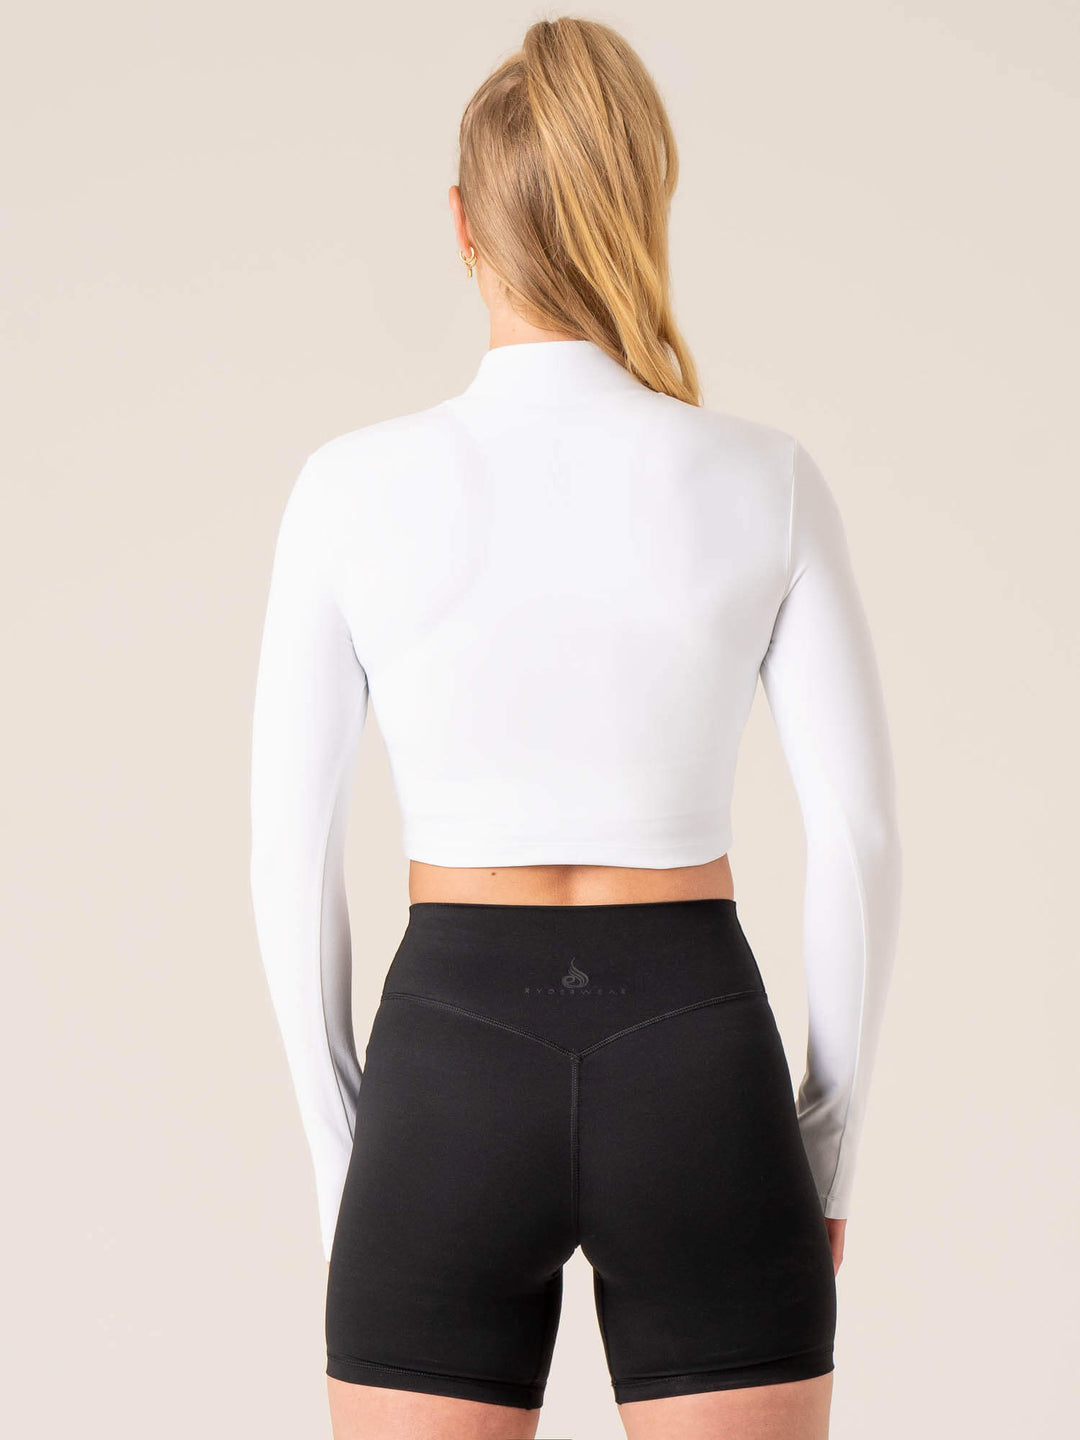 NKD Half Zip Long Sleeve Top - White Clothing Ryderwear 